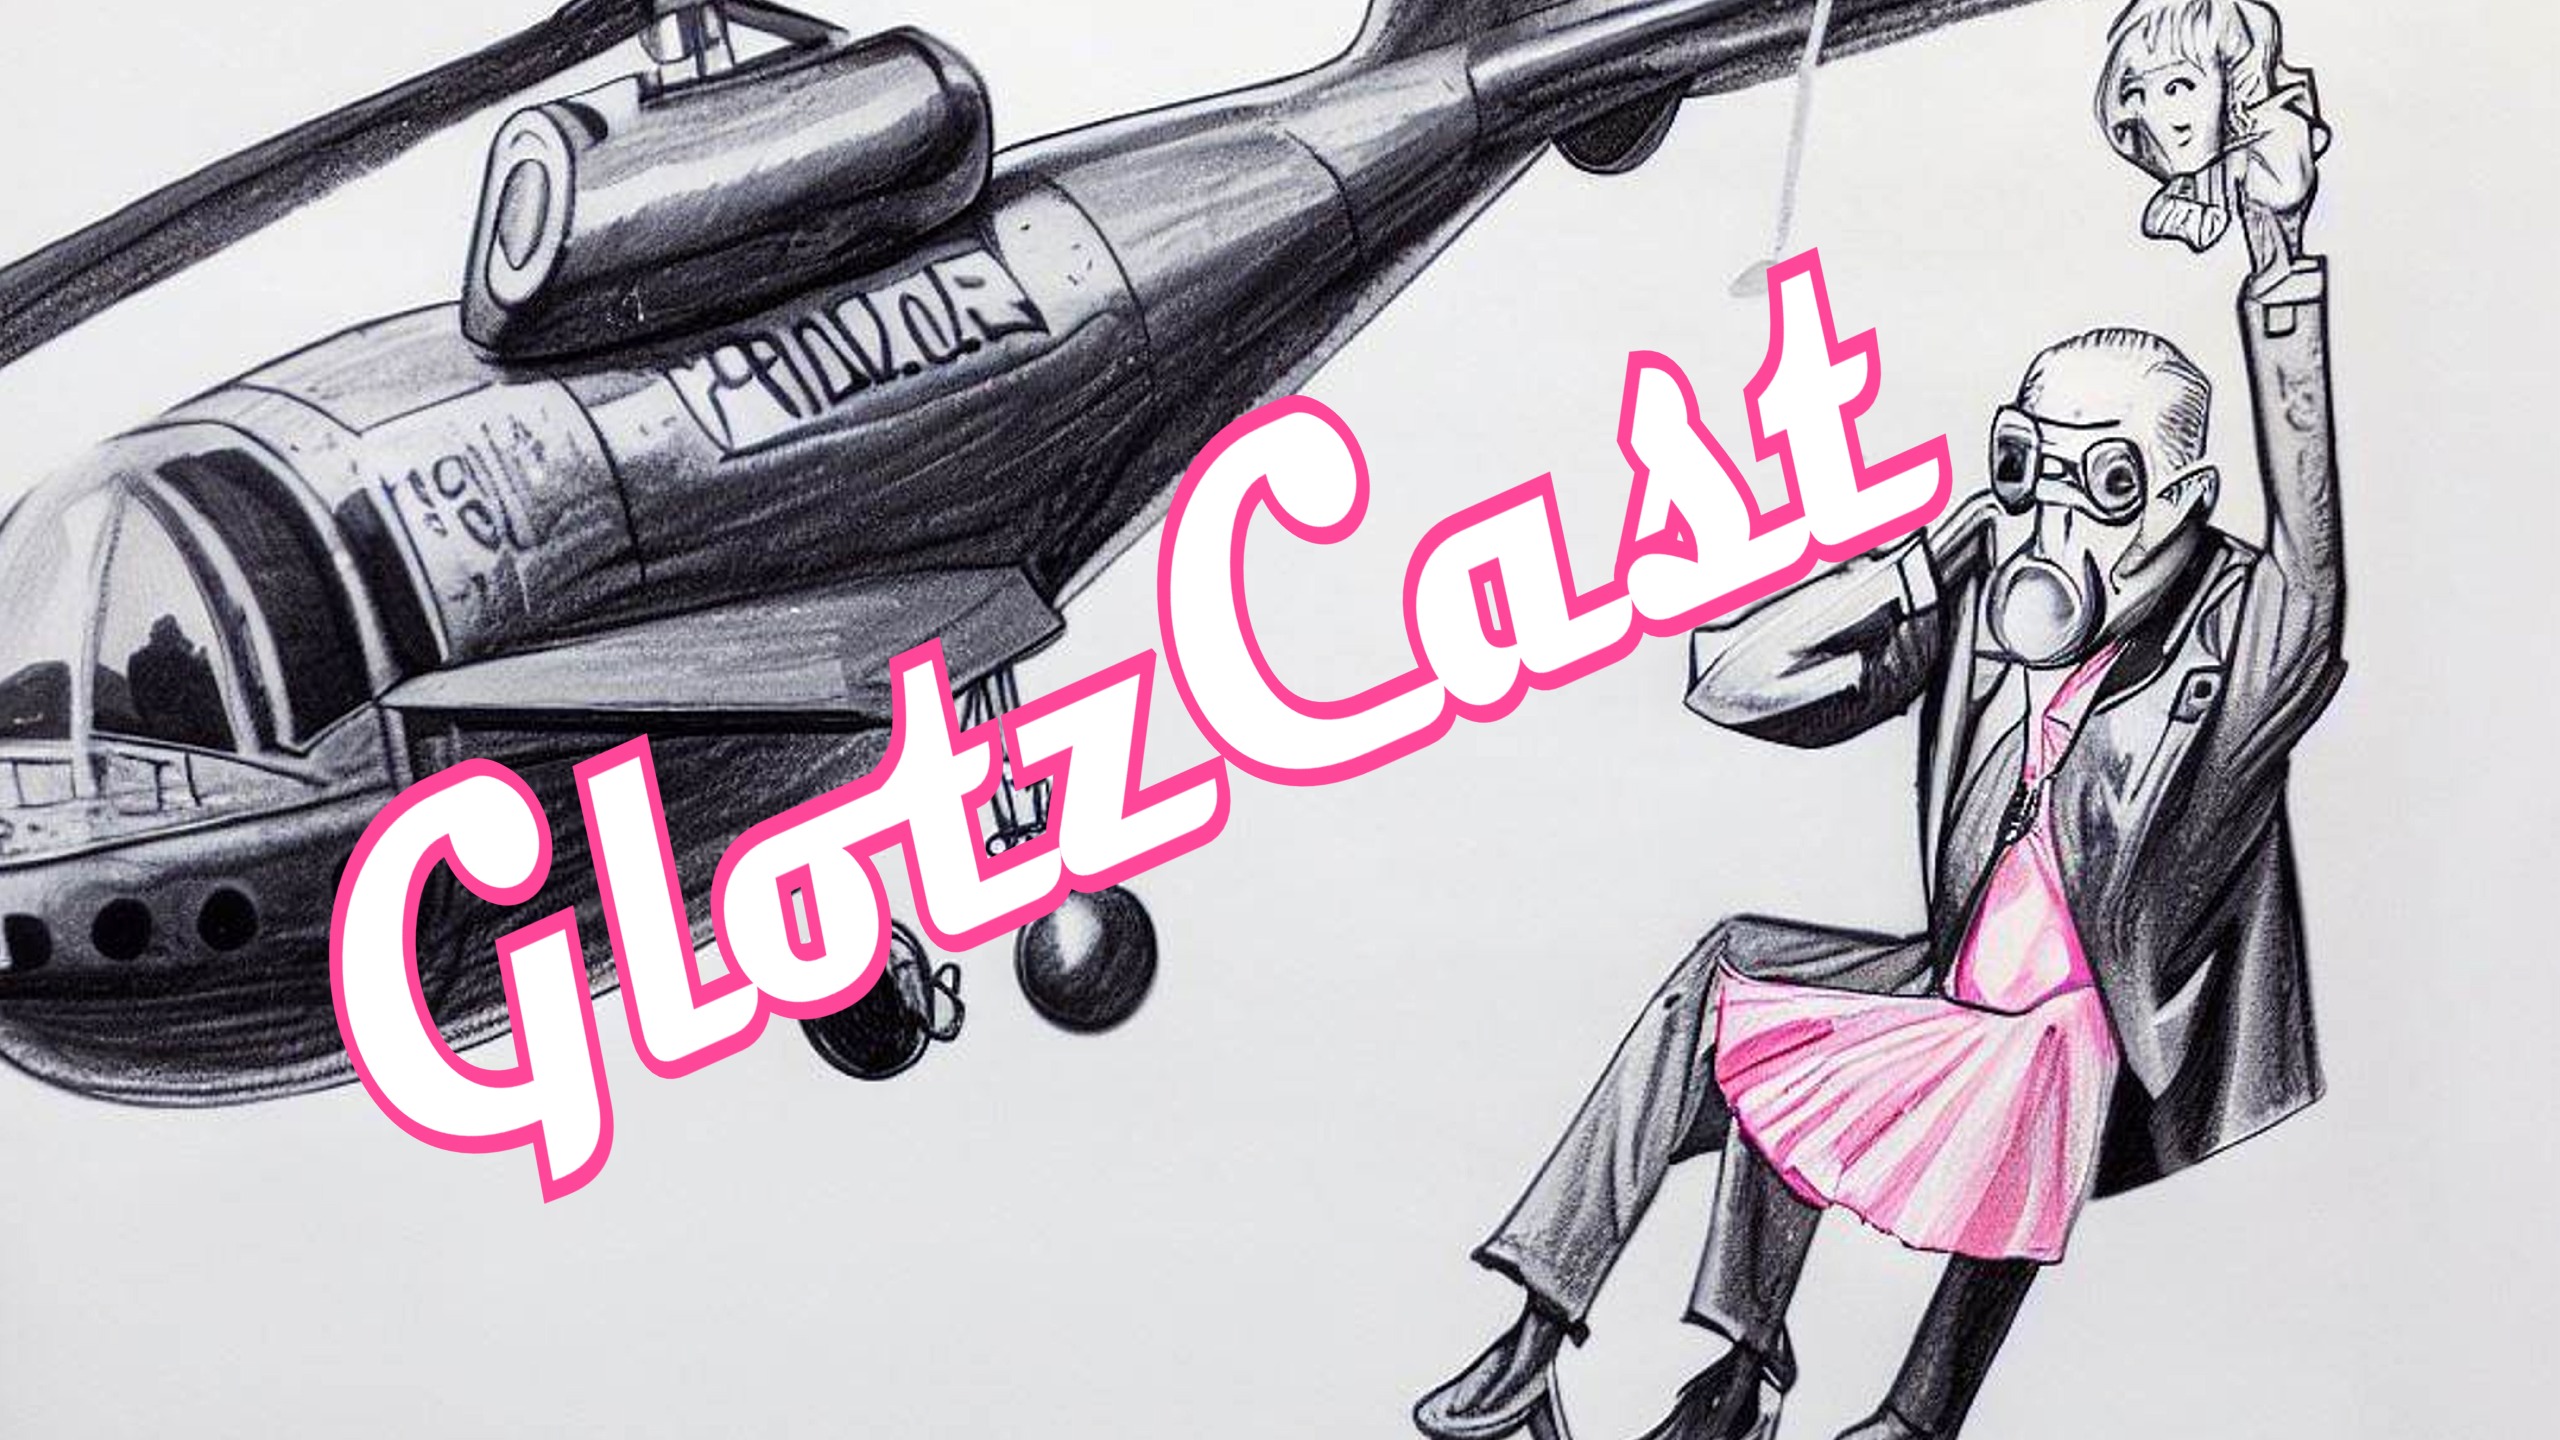 GlotzCast #134 – Jenseits von Oppenheimer: Barbie und Kevin Smith werden durch ChatGPT ersetzt!